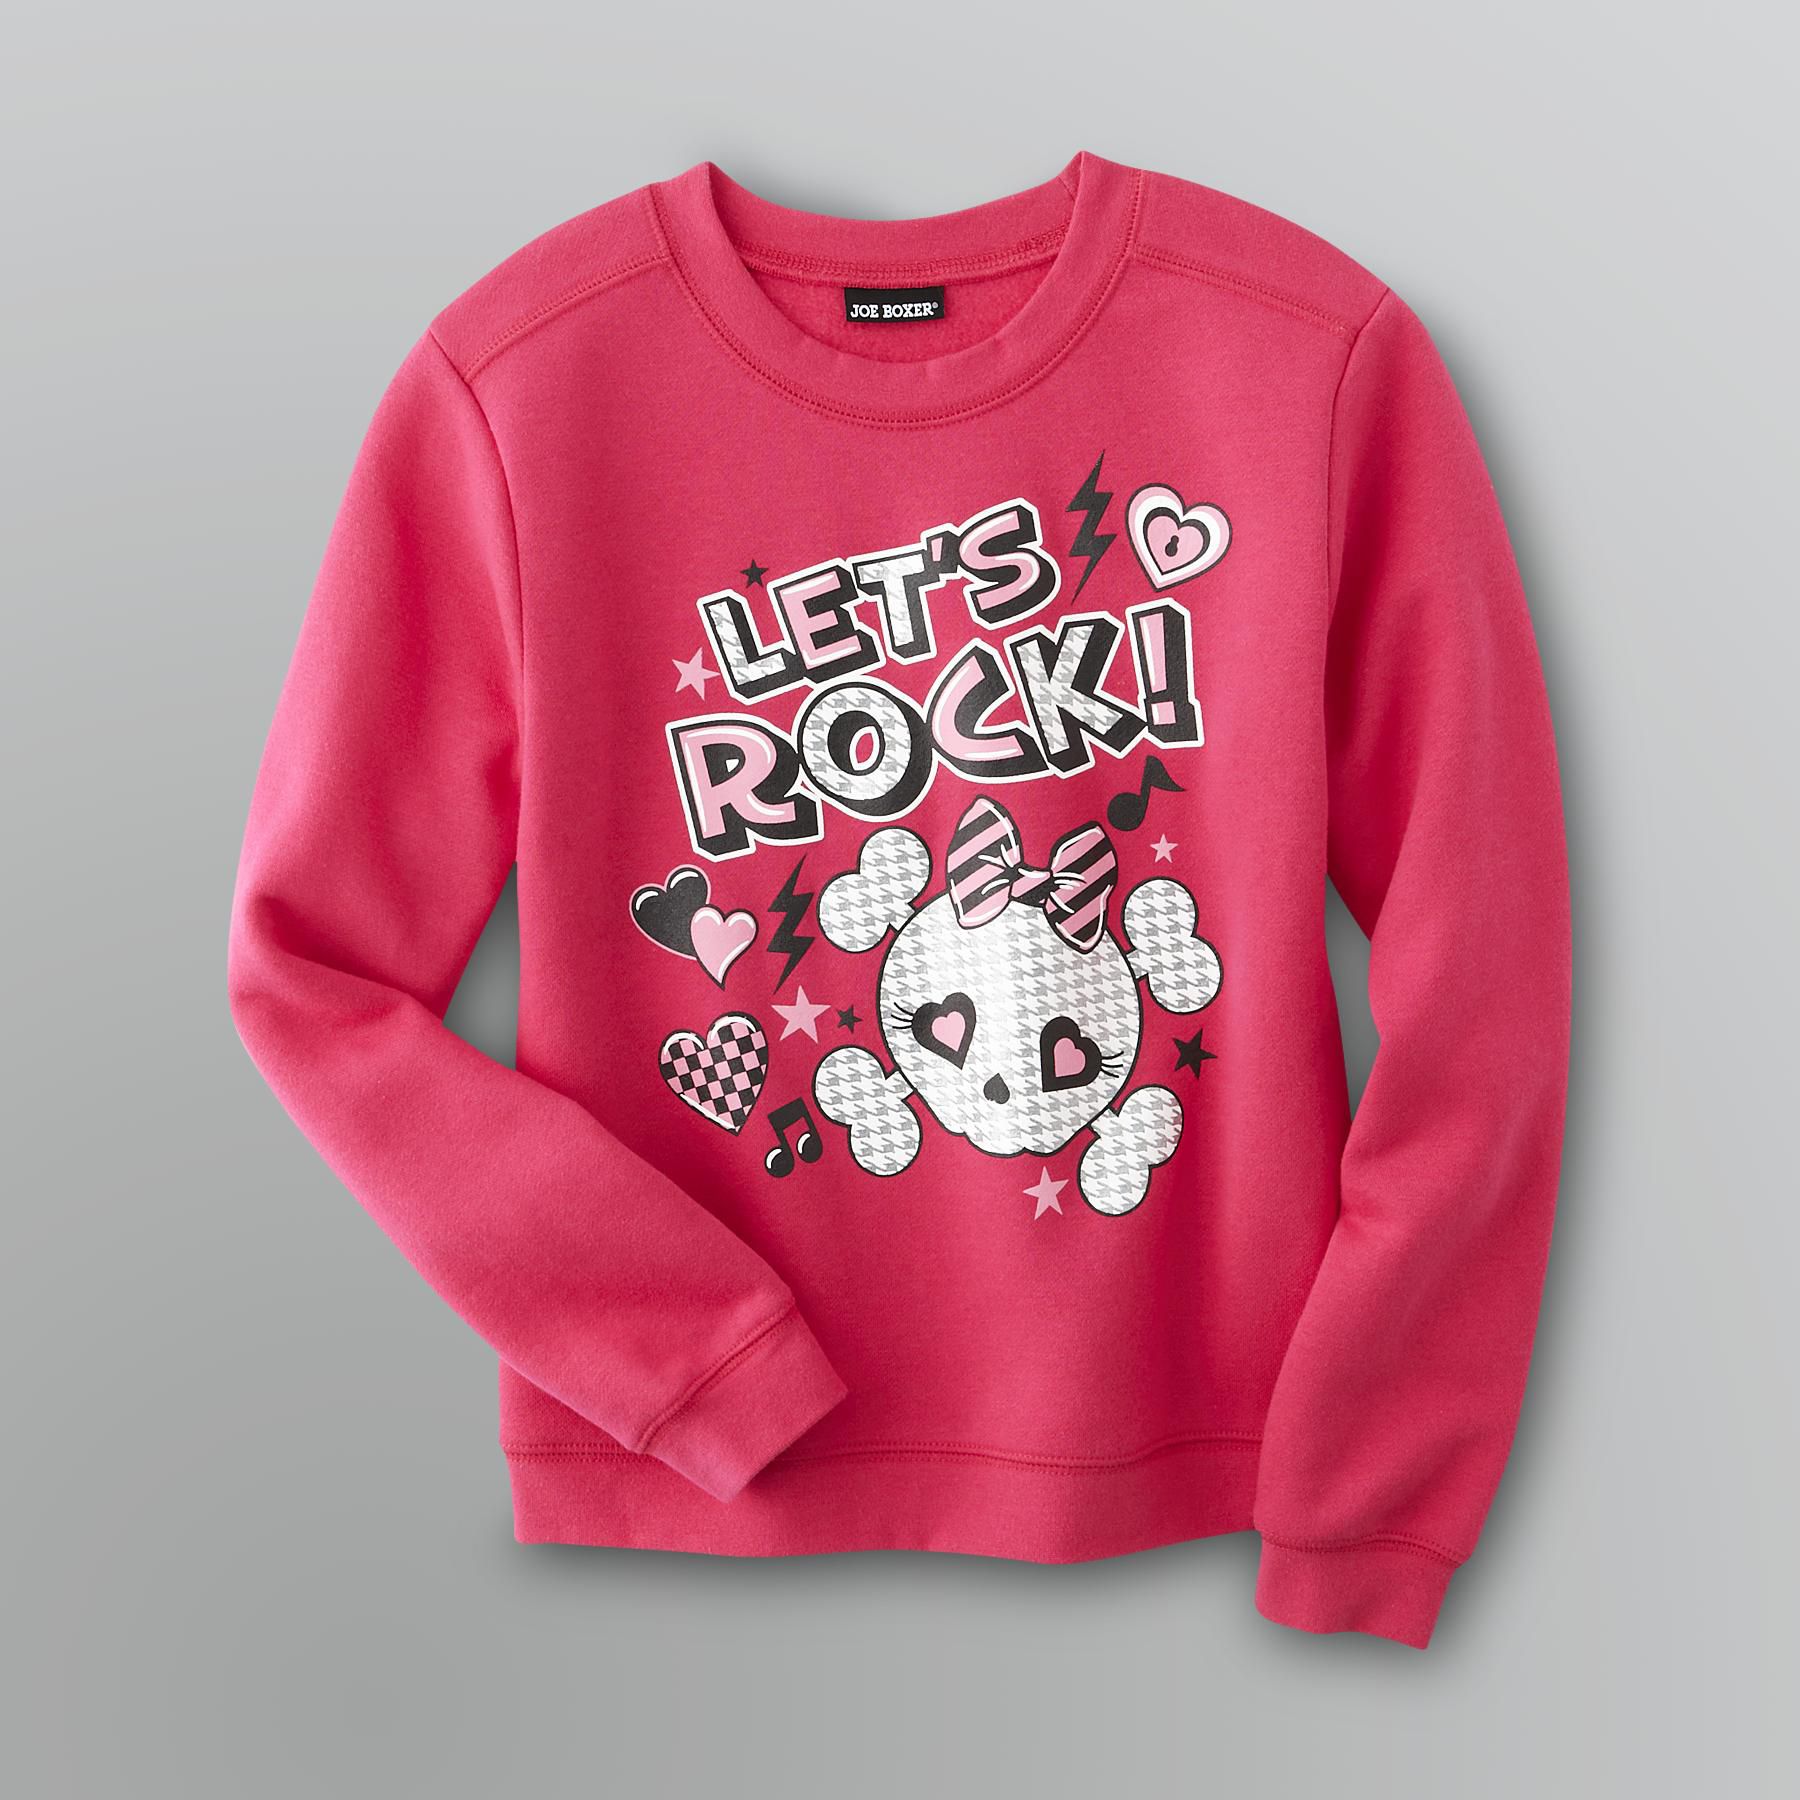 Joe Boxer Girl's Fleece Graphic Sweatshirt - Let's Rock